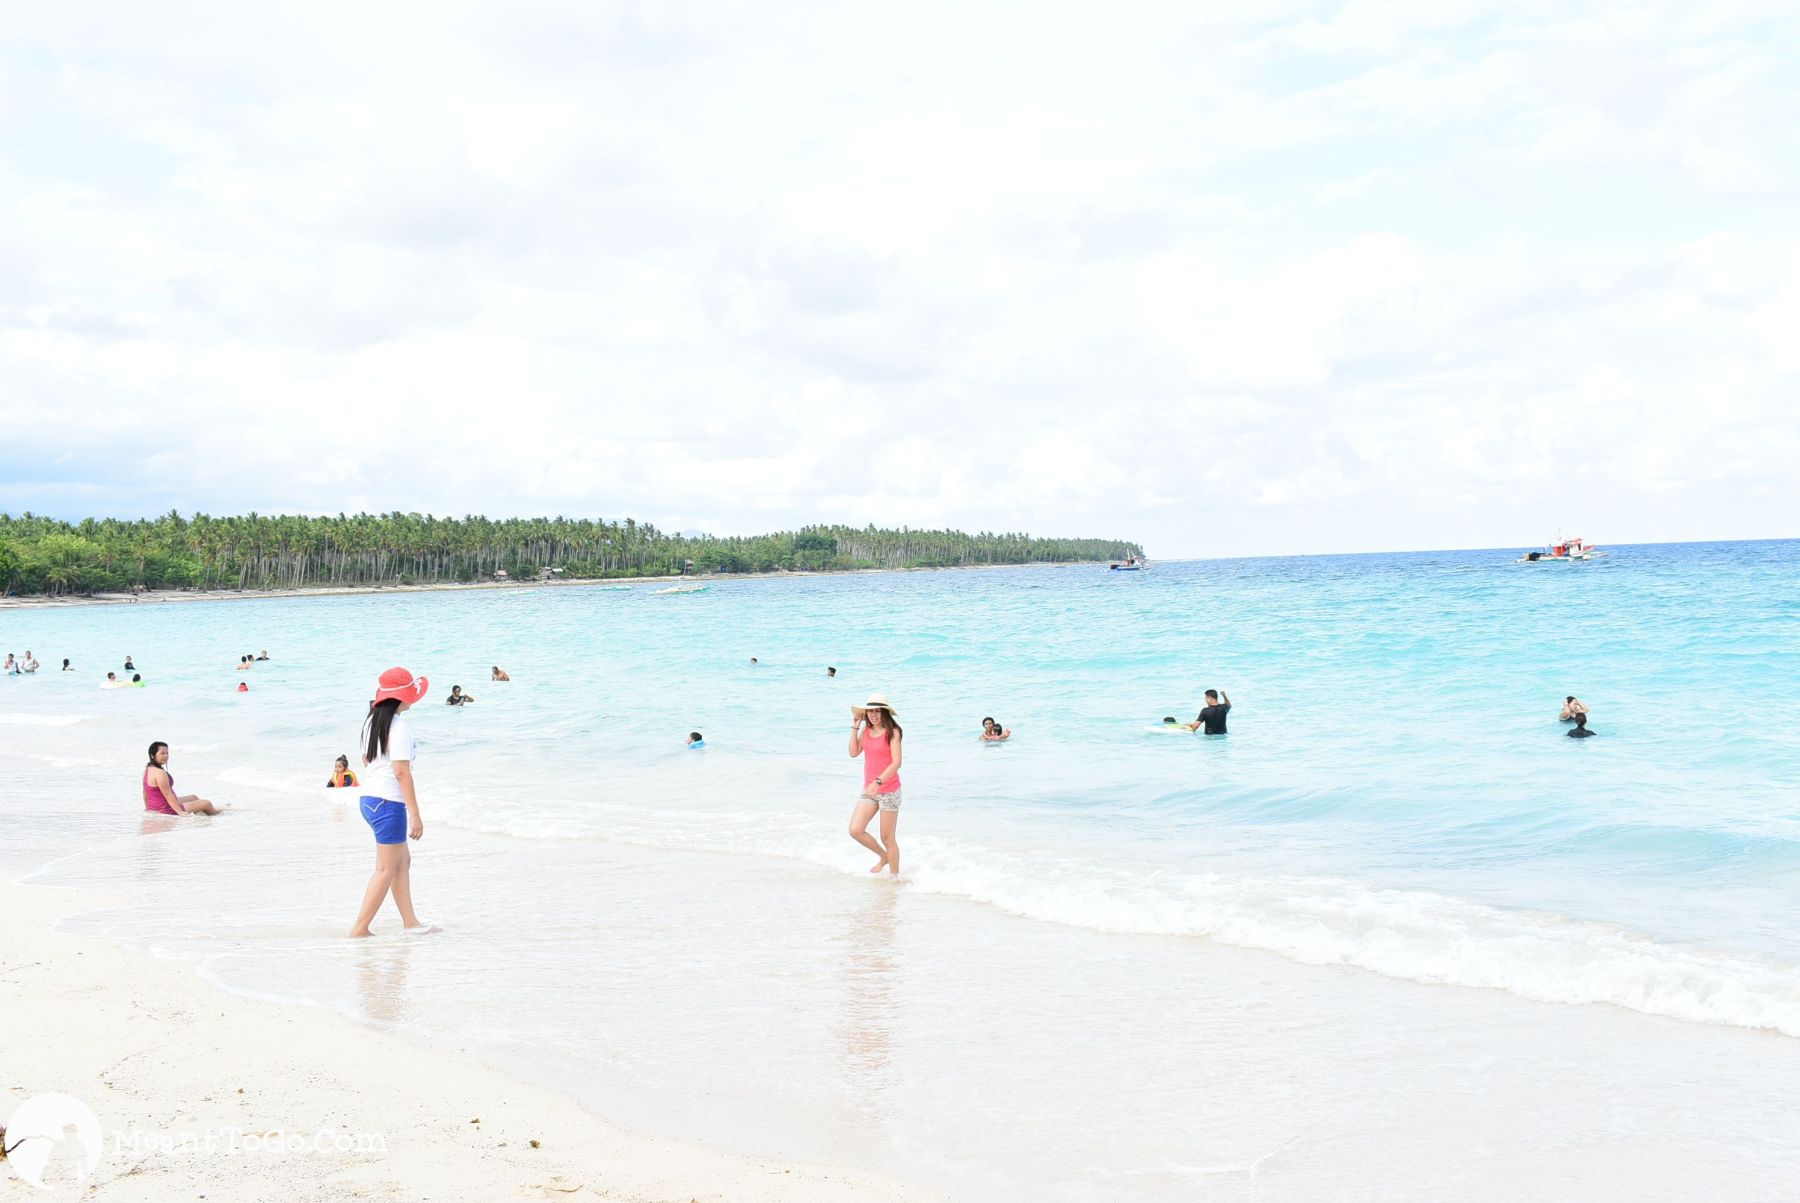 Dahican Beach, Mati, Davao Oriental